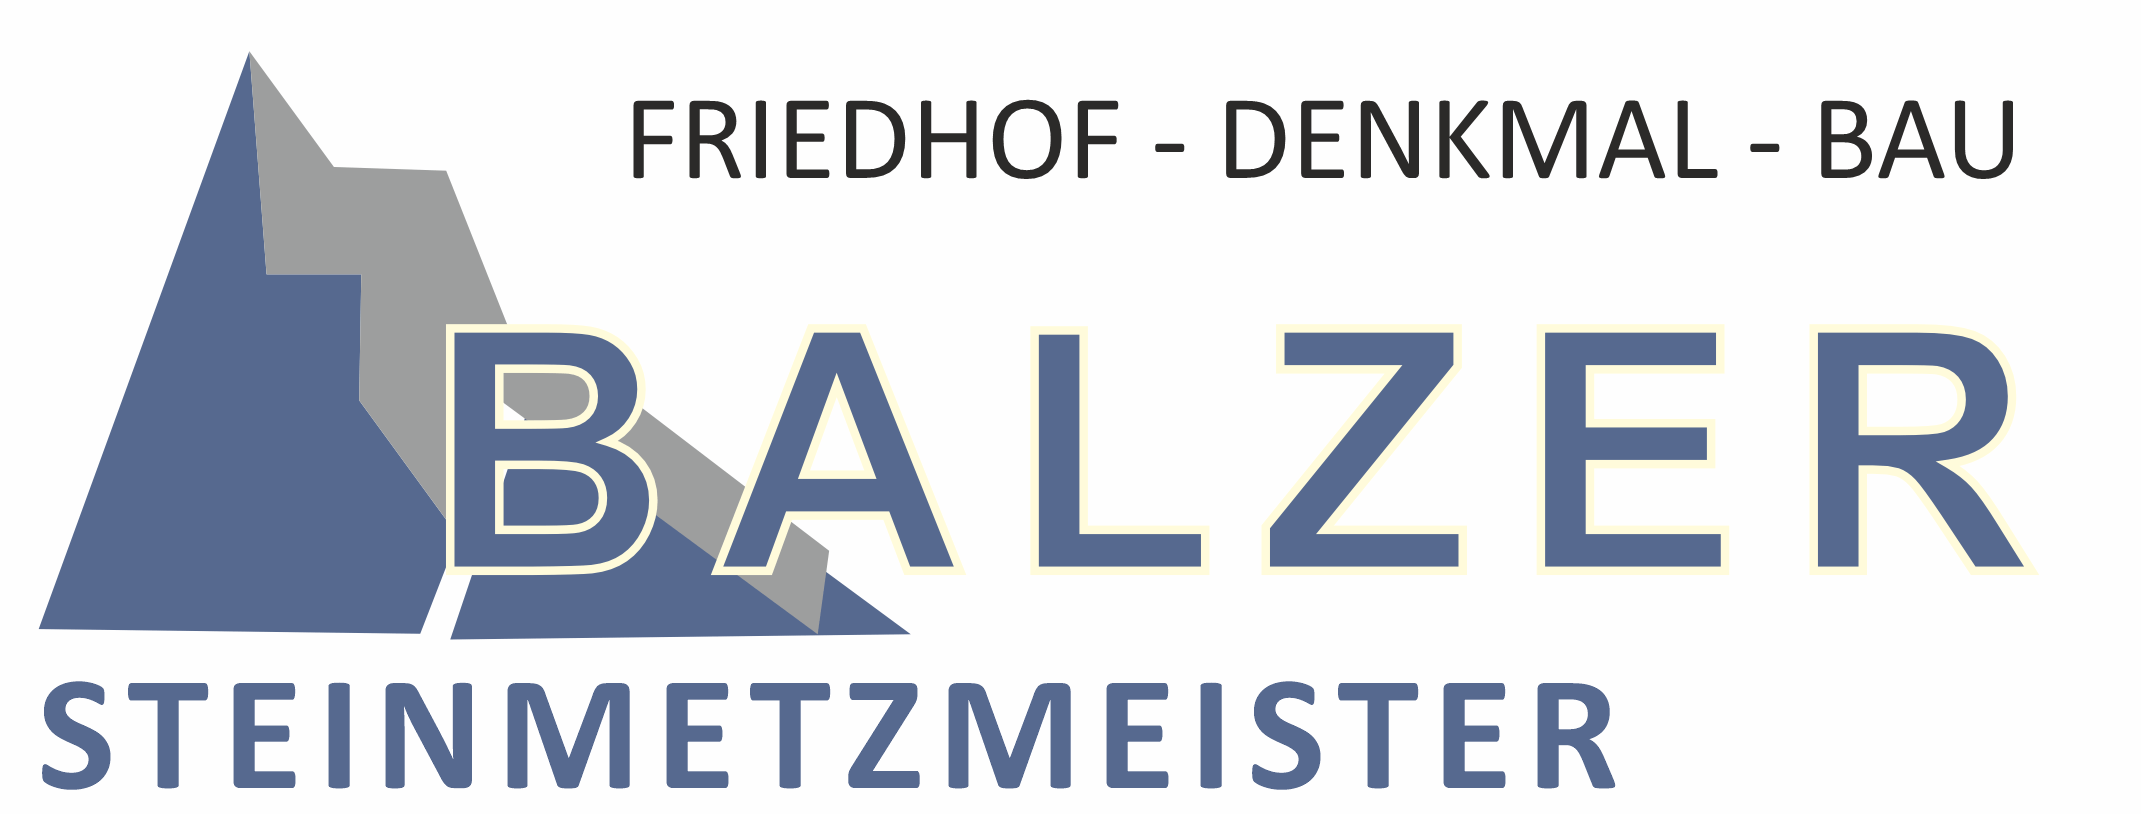 Balzer OG Steinmetzmeister logo